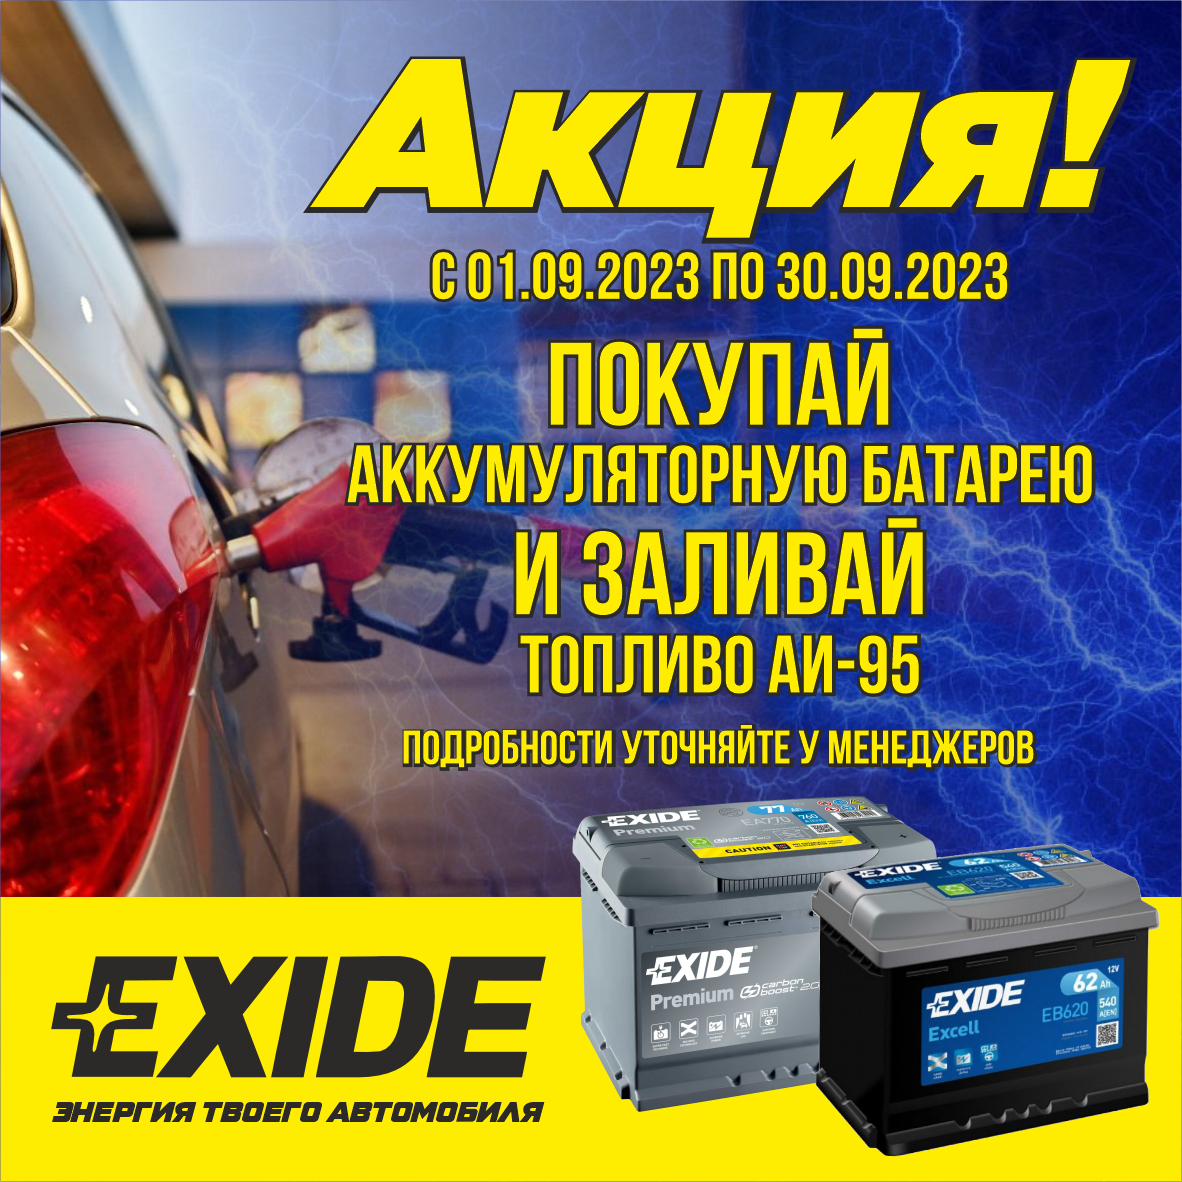 Акция "Exide-энергия твоего автомобиля"